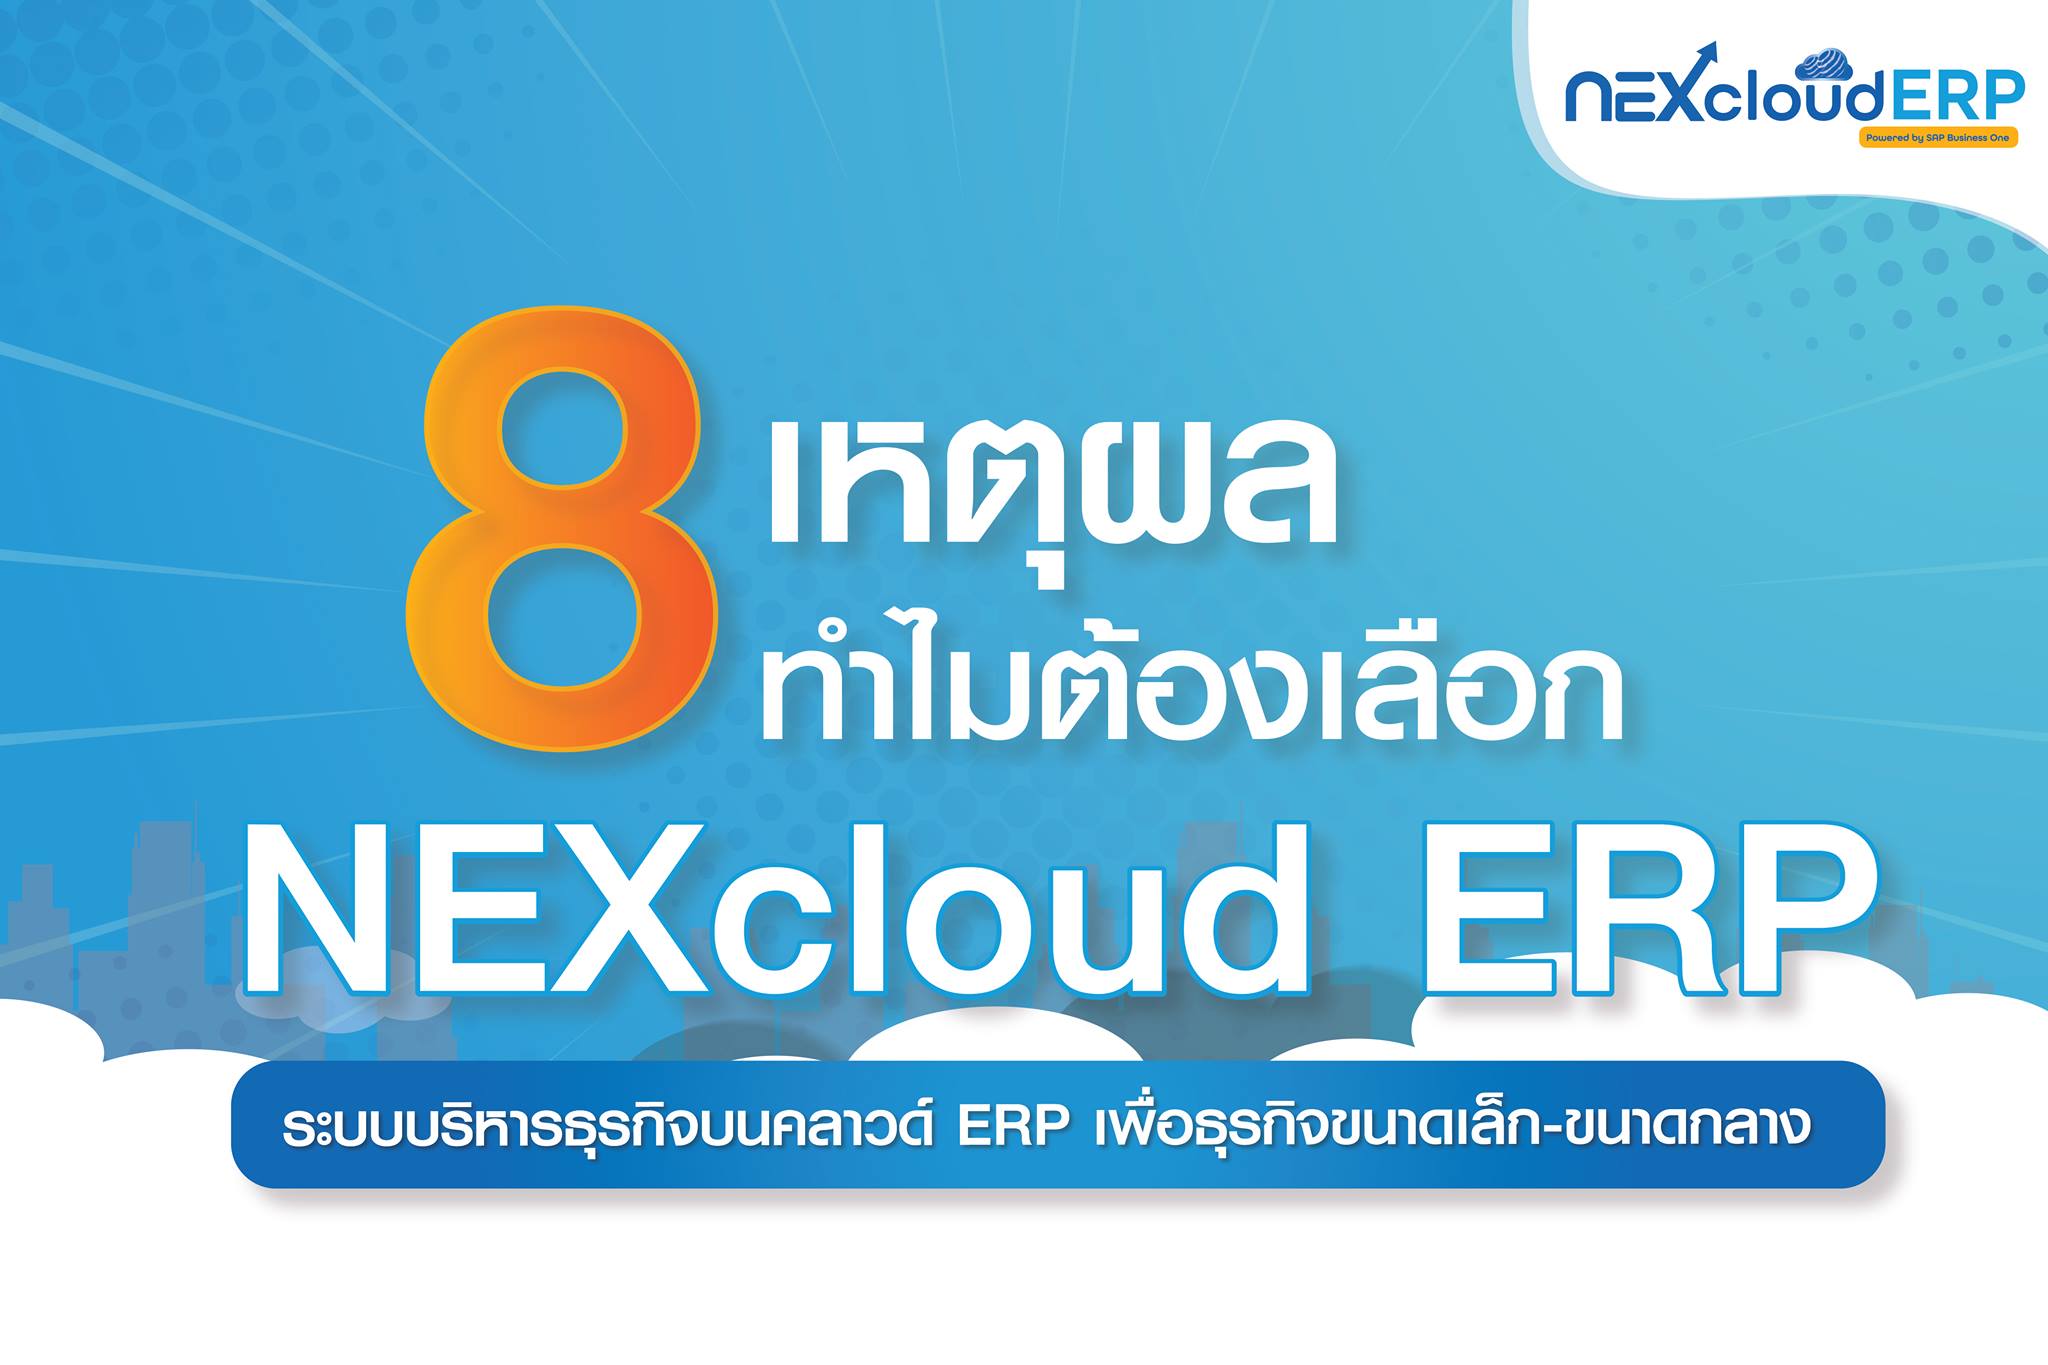 8 เหตุผล ทำไมต้องเลือก NEXcloud ERP ดีไหม ทำอะไรได้บ้าง